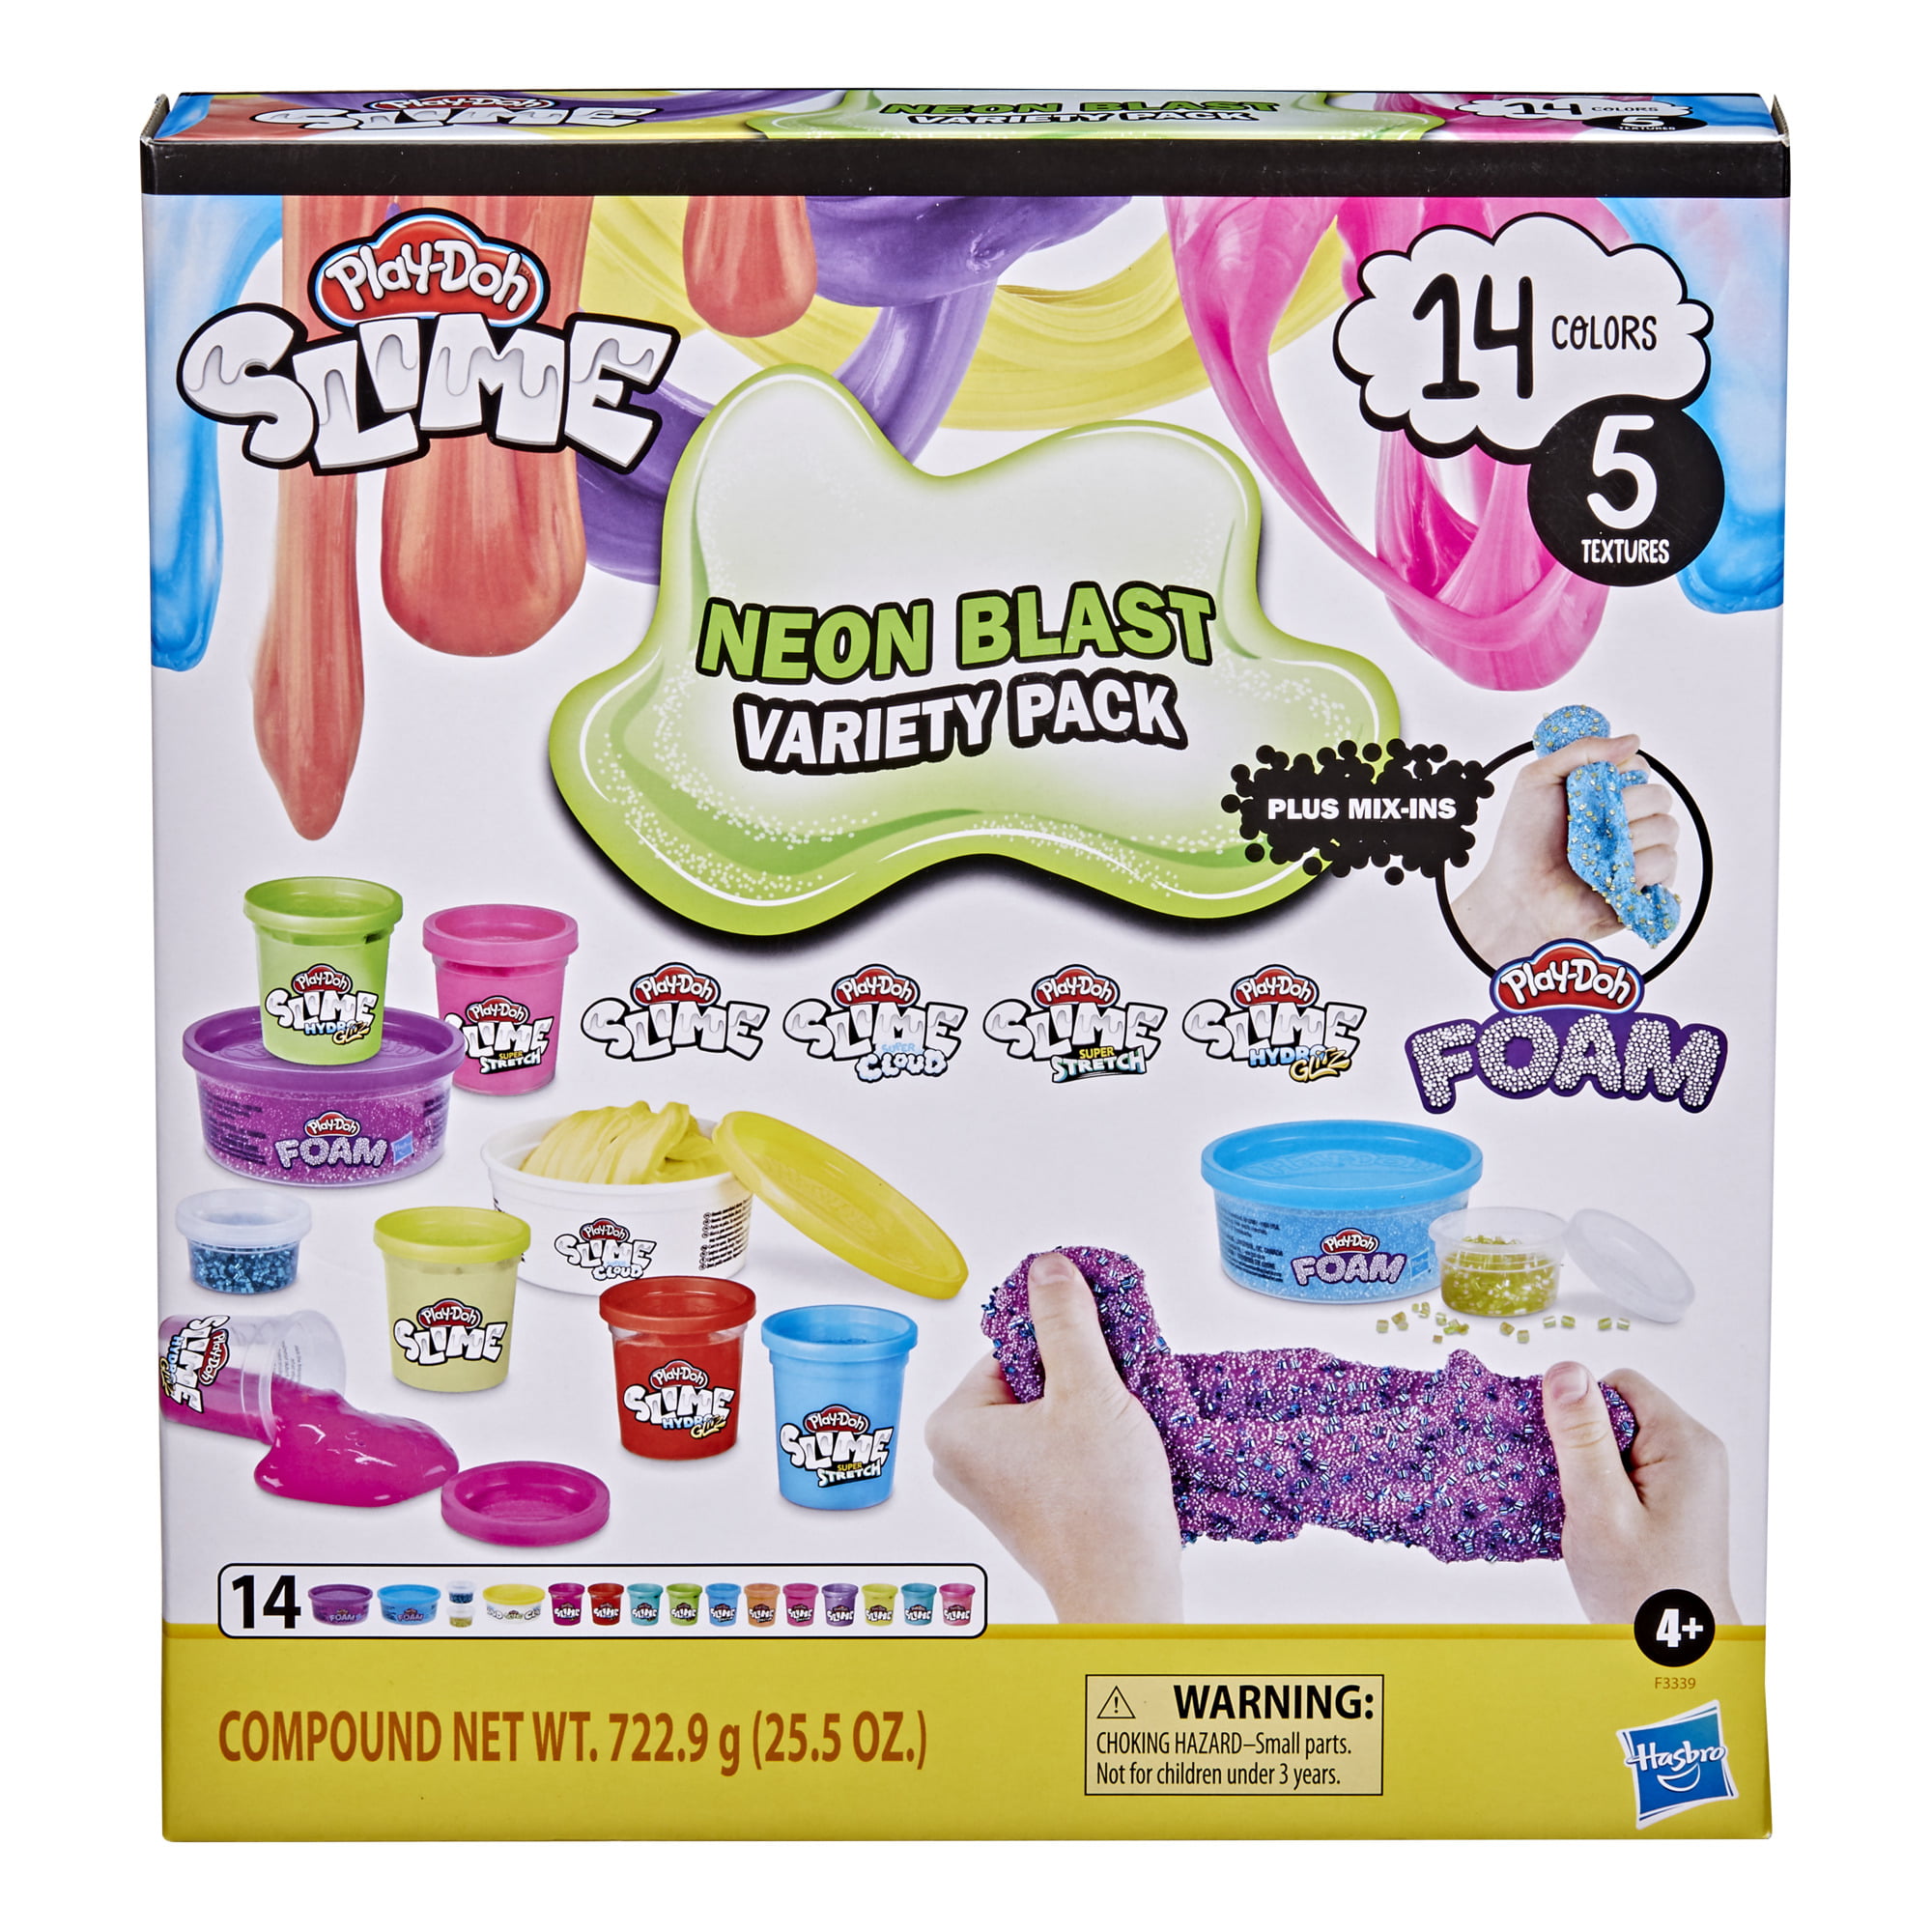 Play-Doh Slime N Foam Neon Blast Variety Pack 14 Colors 5 Textures